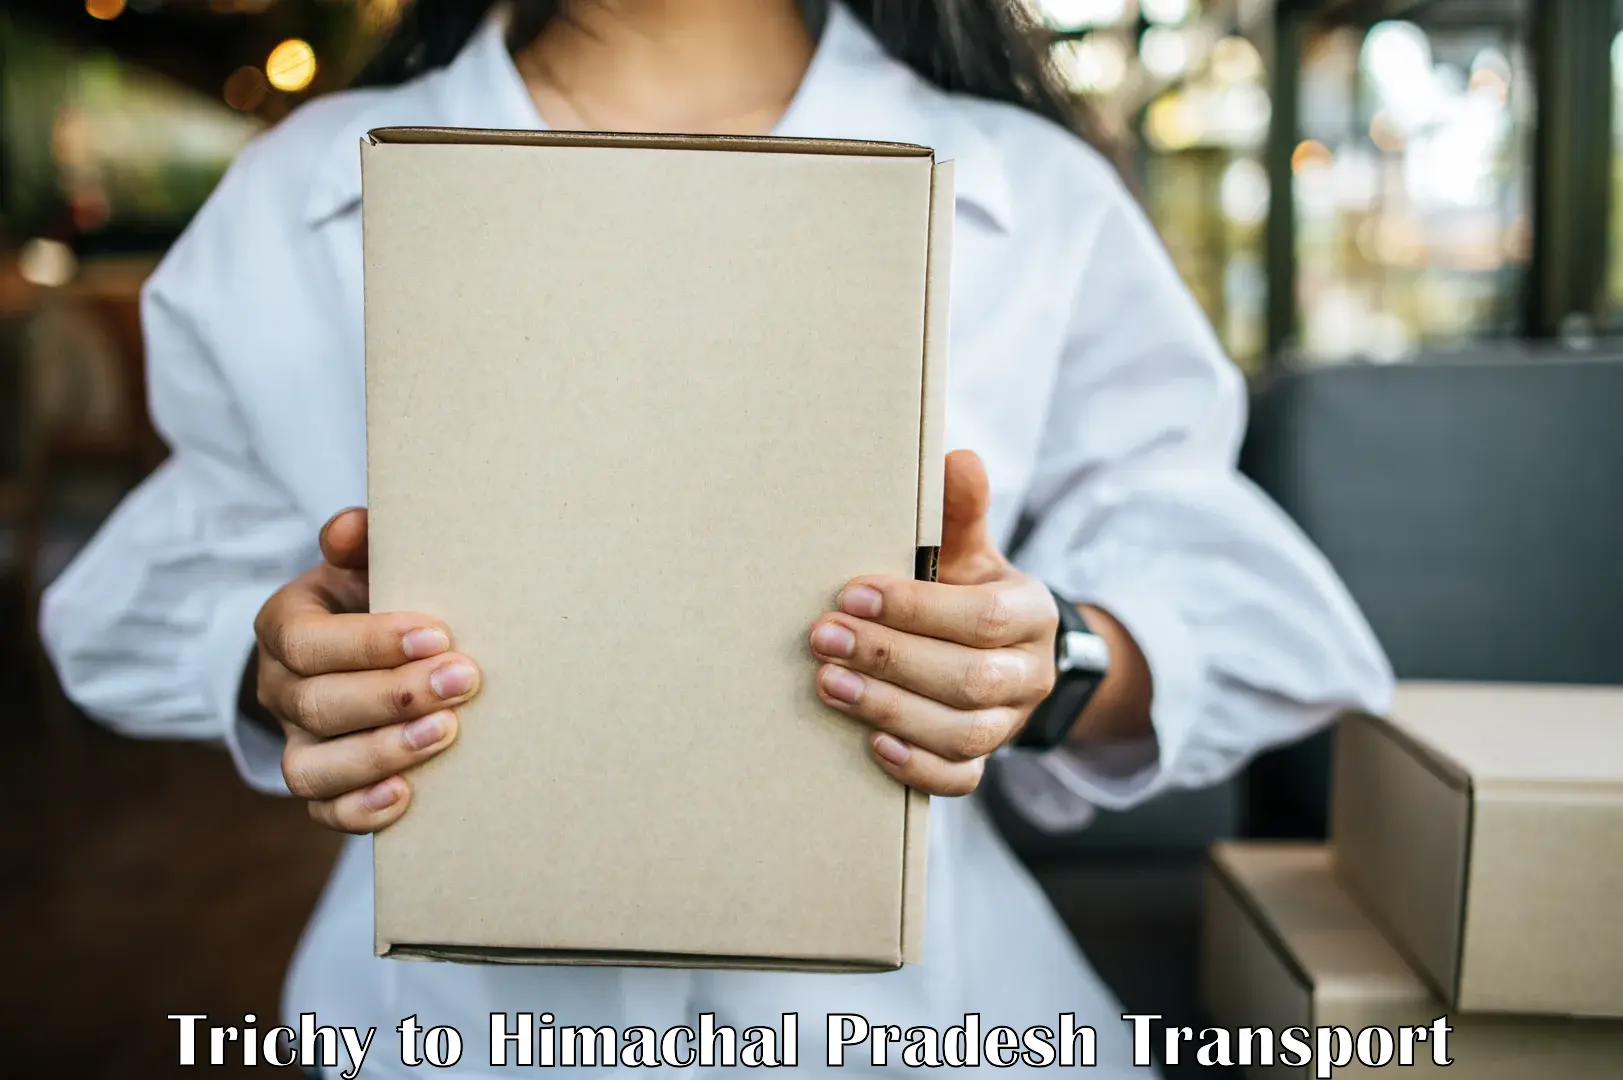 Interstate transport services Trichy to Una Himachal Pradesh